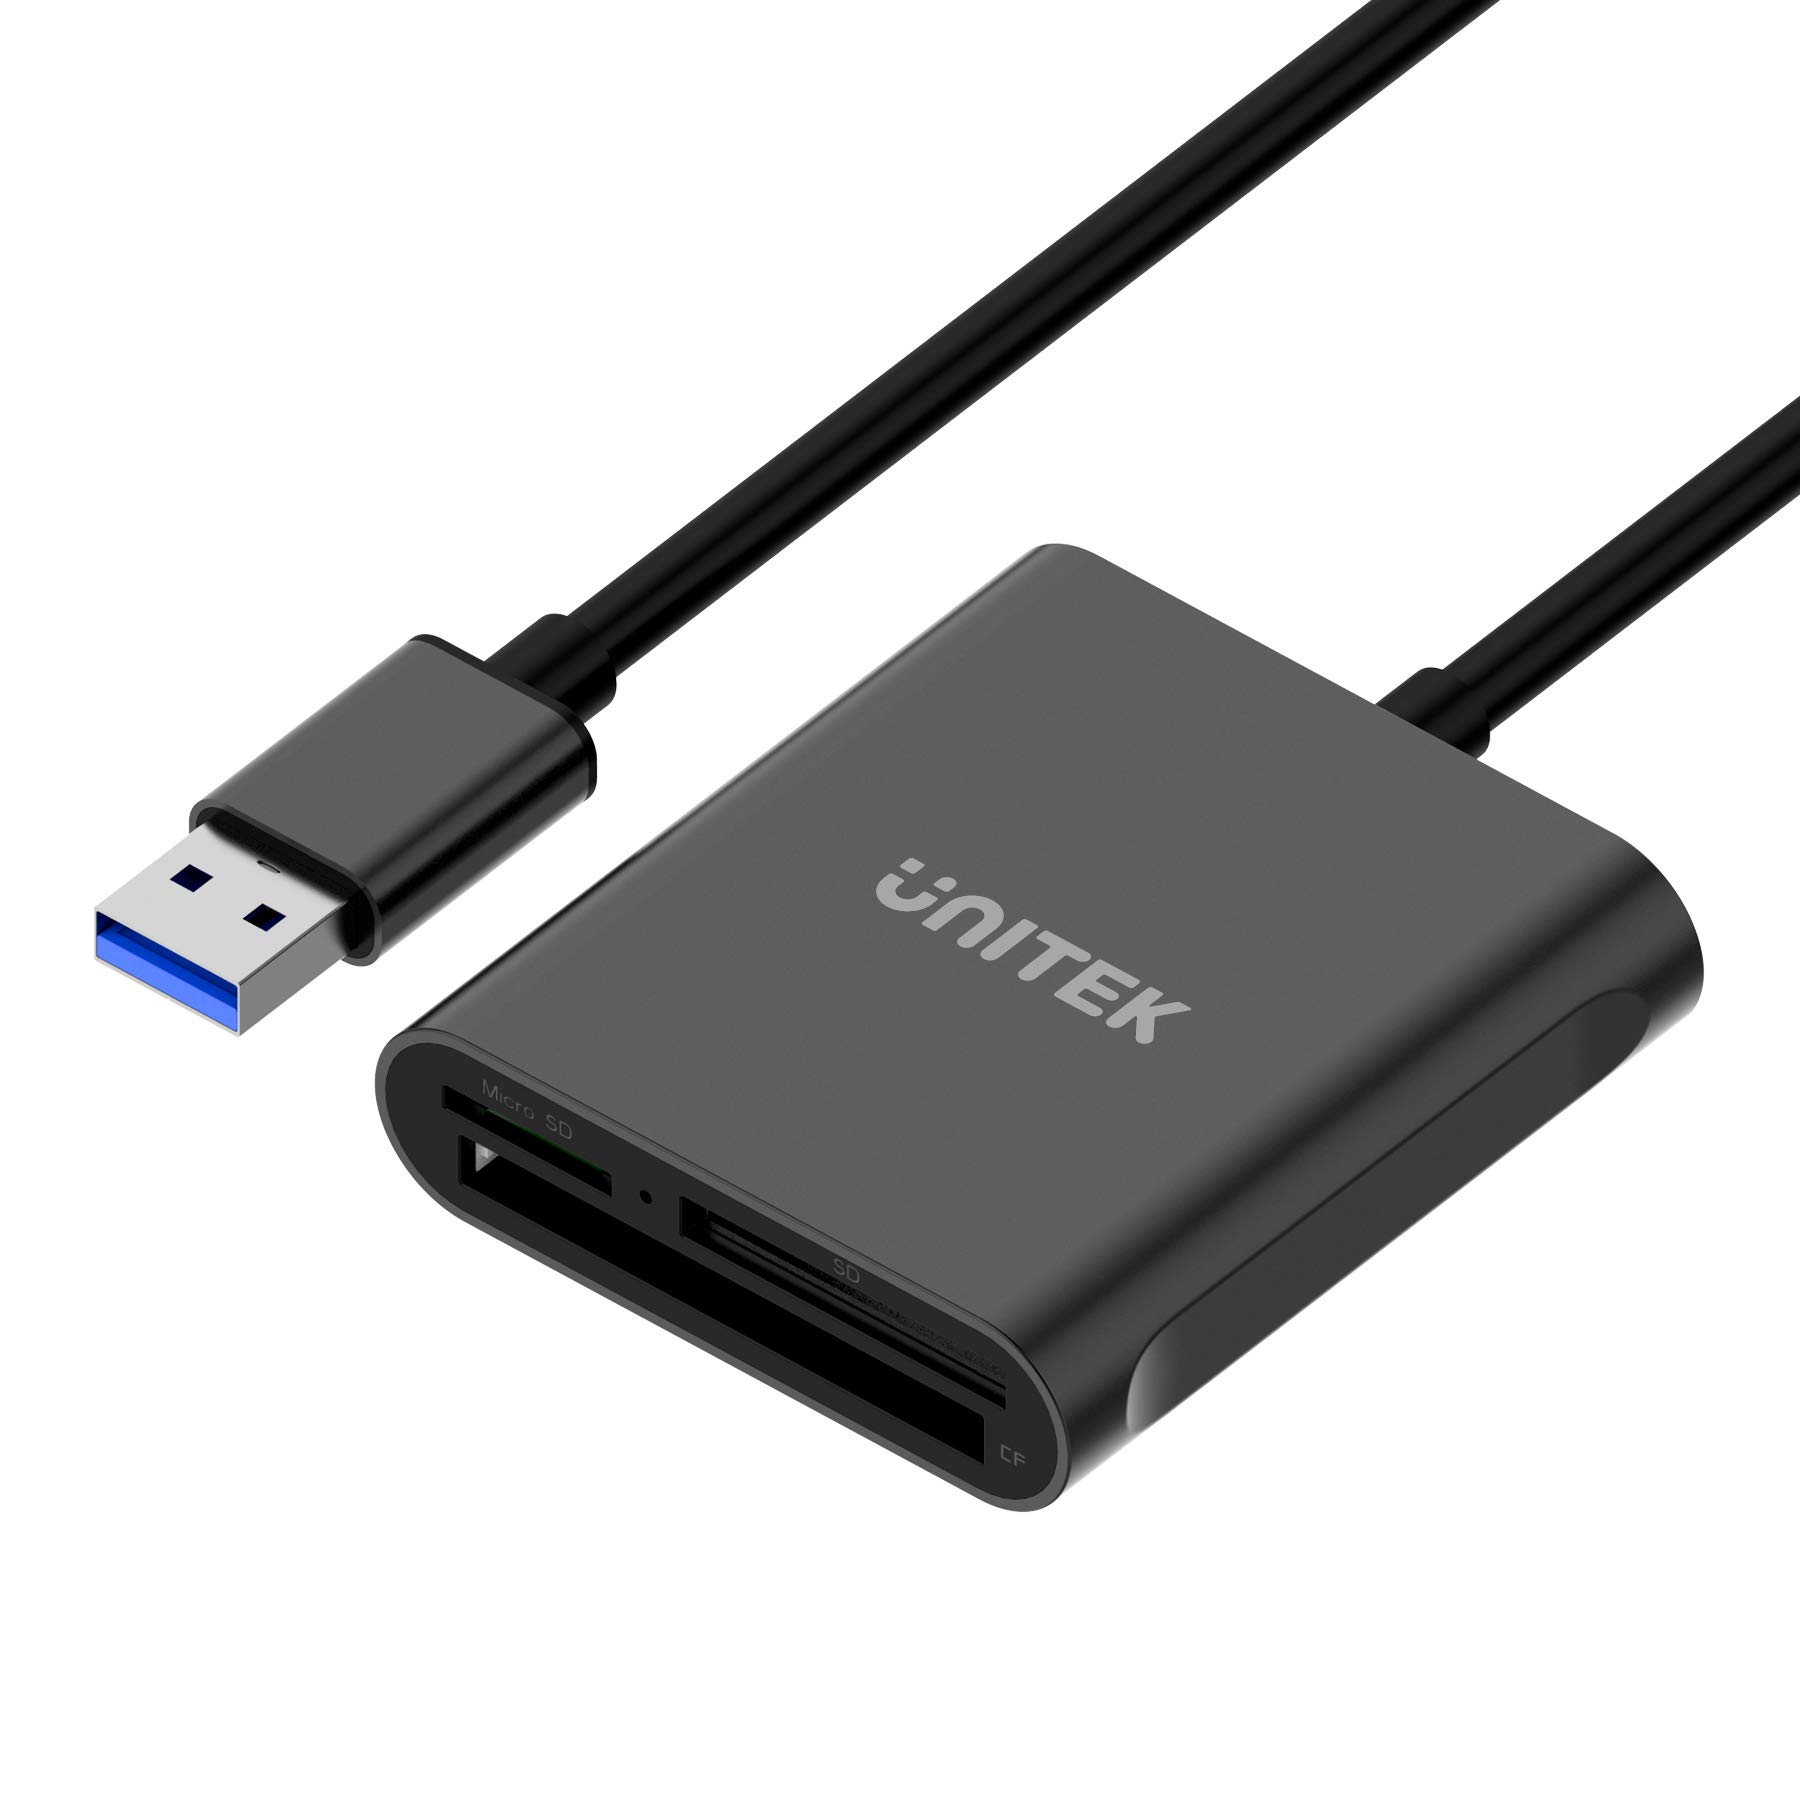 Unitek USB3.1 Gen1 マルチカードリーダー 3スロット搭載 SD TF/microSD コンパクトフラッシュ/CFカードリーダー 3 枚のカードを同時に読み取る 高耐久アルミ合金 3in1外付けカードリーダー 高速 データ読取 データ移行 コンパクト ブラック